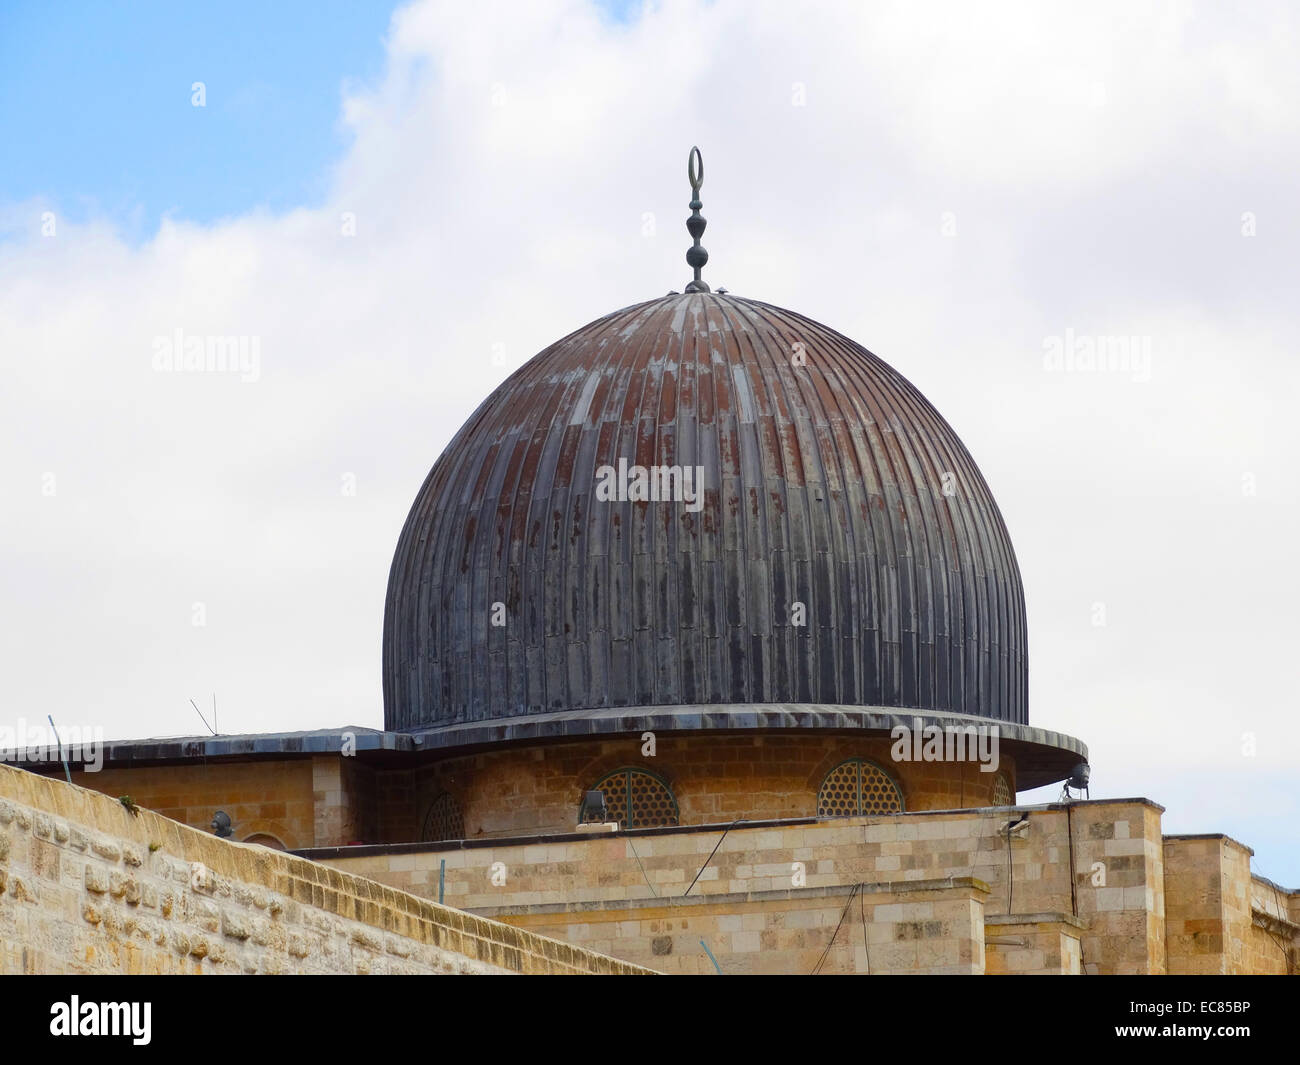 La mosquée d'Al-Aqsa, le troisième lieu saint de l'Islam ; situé dans la vieille ville de Jérusalem. Banque D'Images